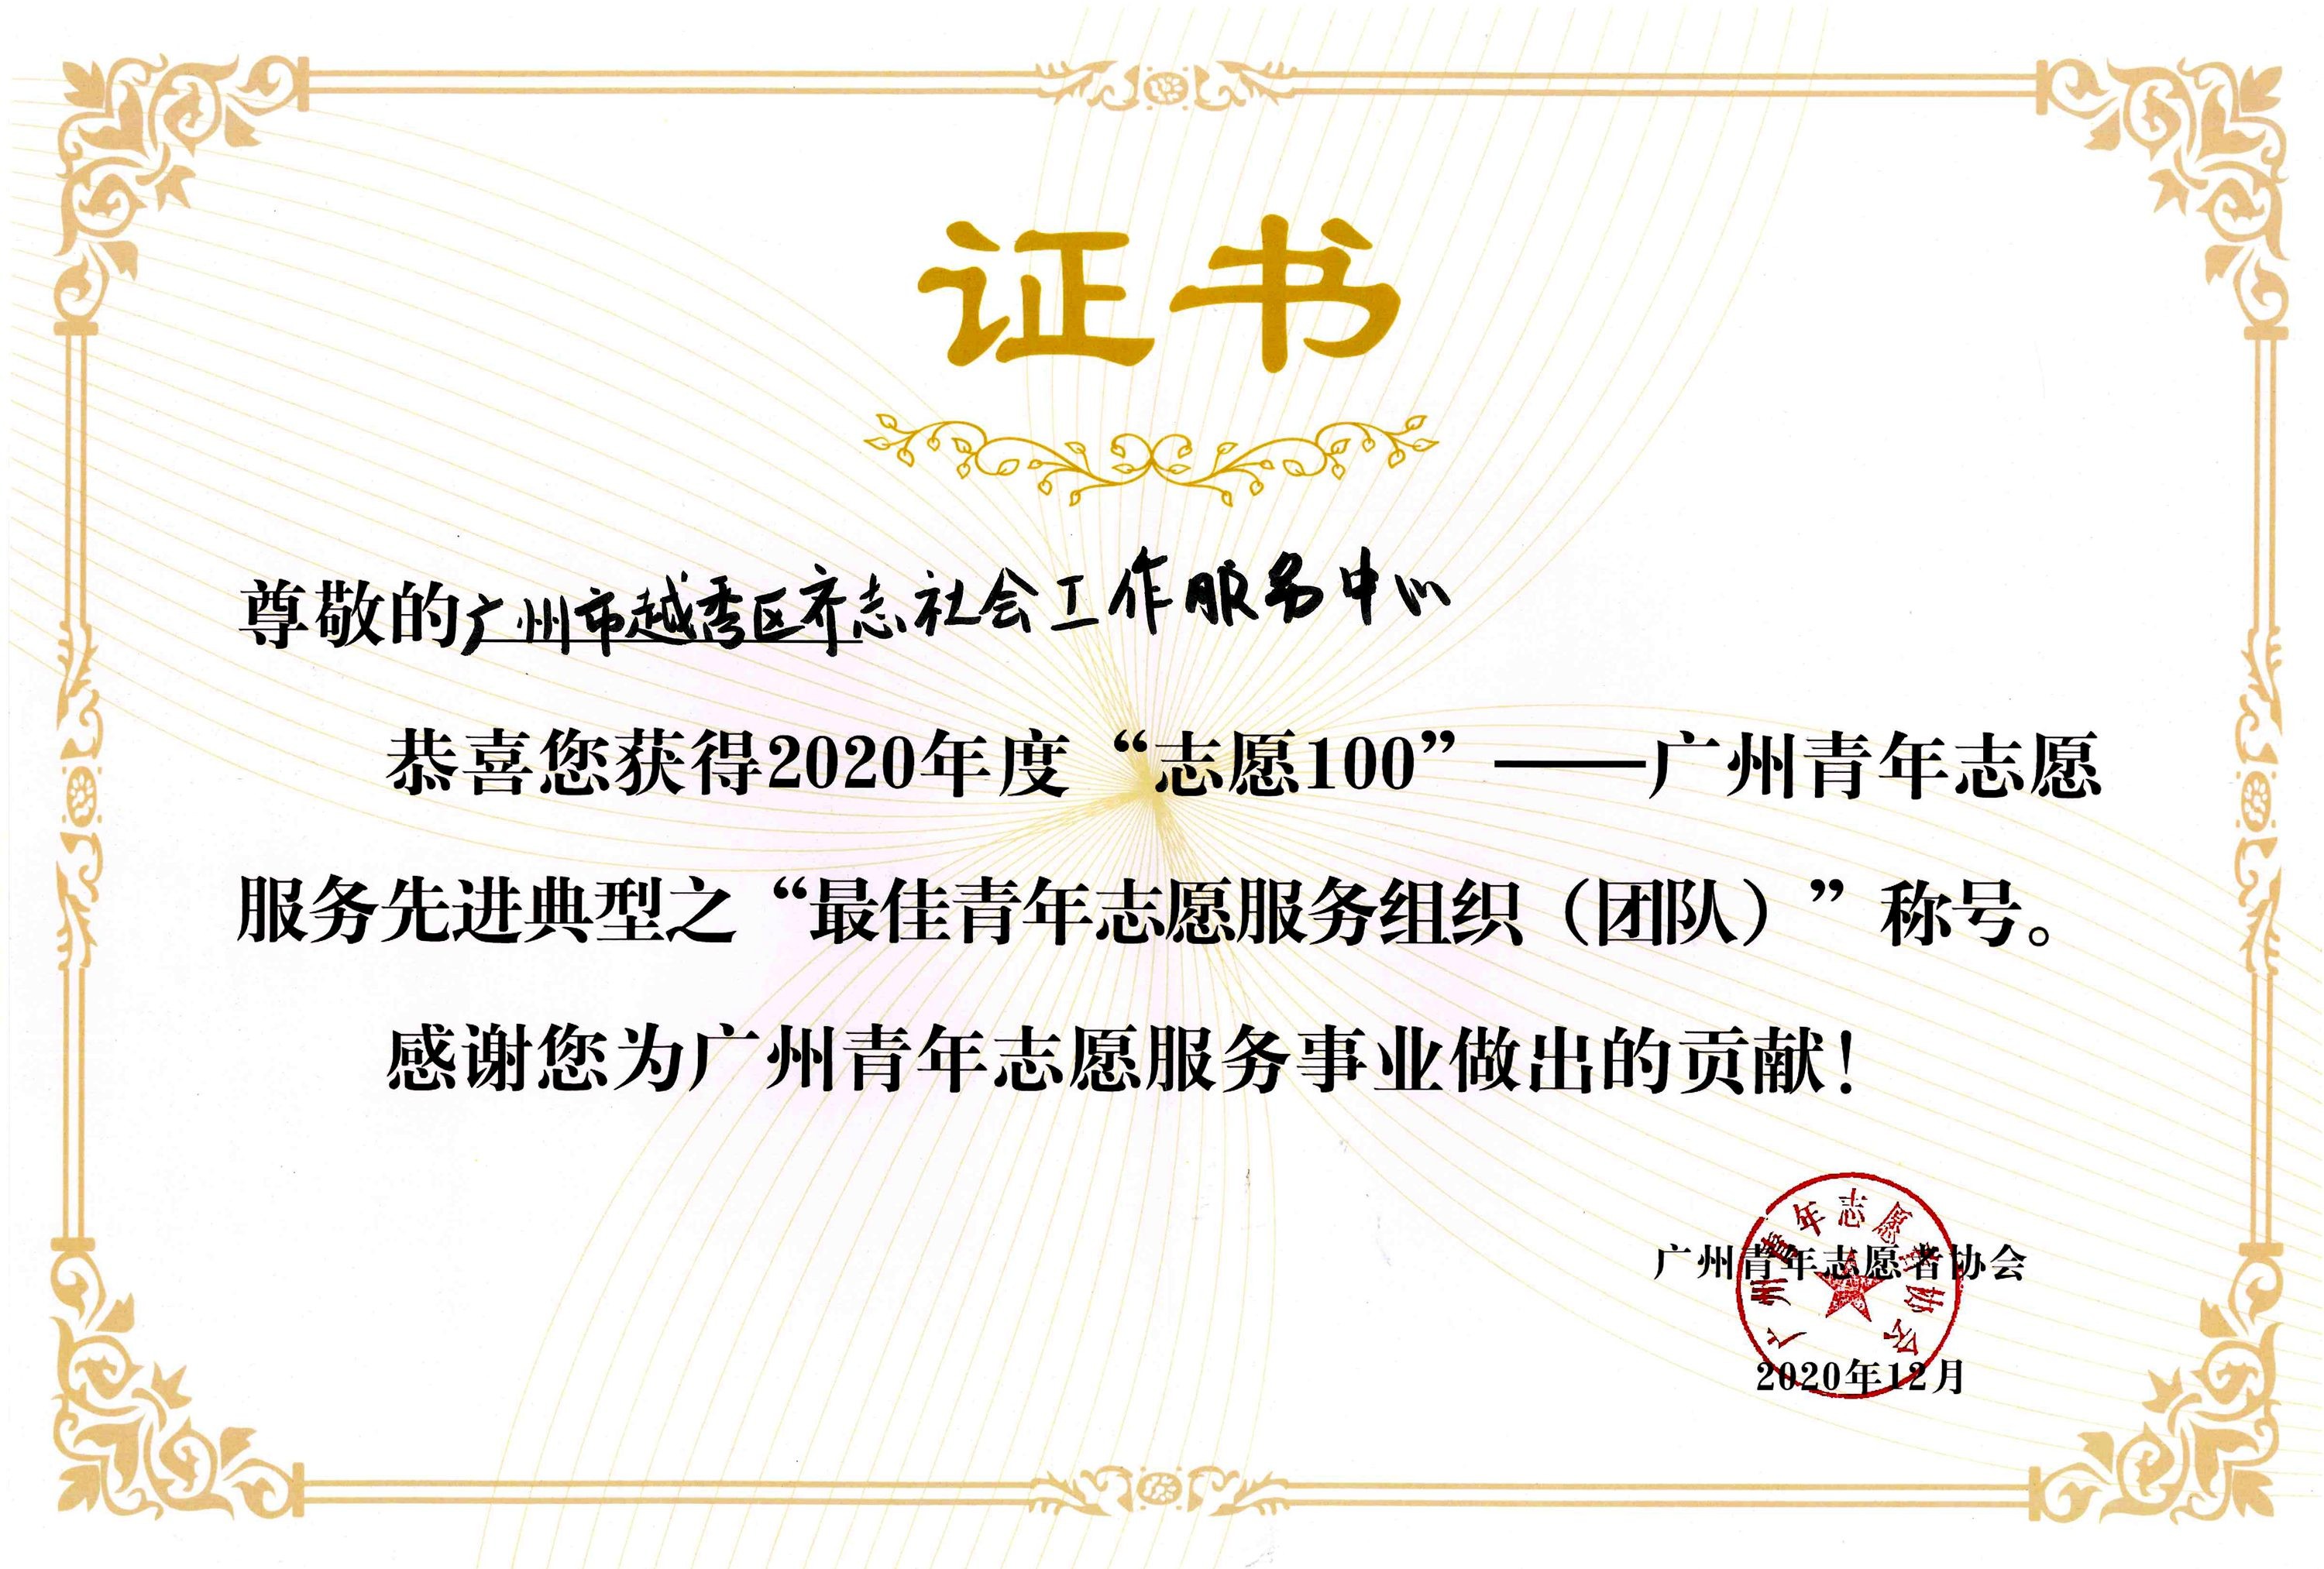 2020年度“志愿100”——广州青年志愿服务先进典型之“最佳青年志愿服务组织(团队)”.jpg